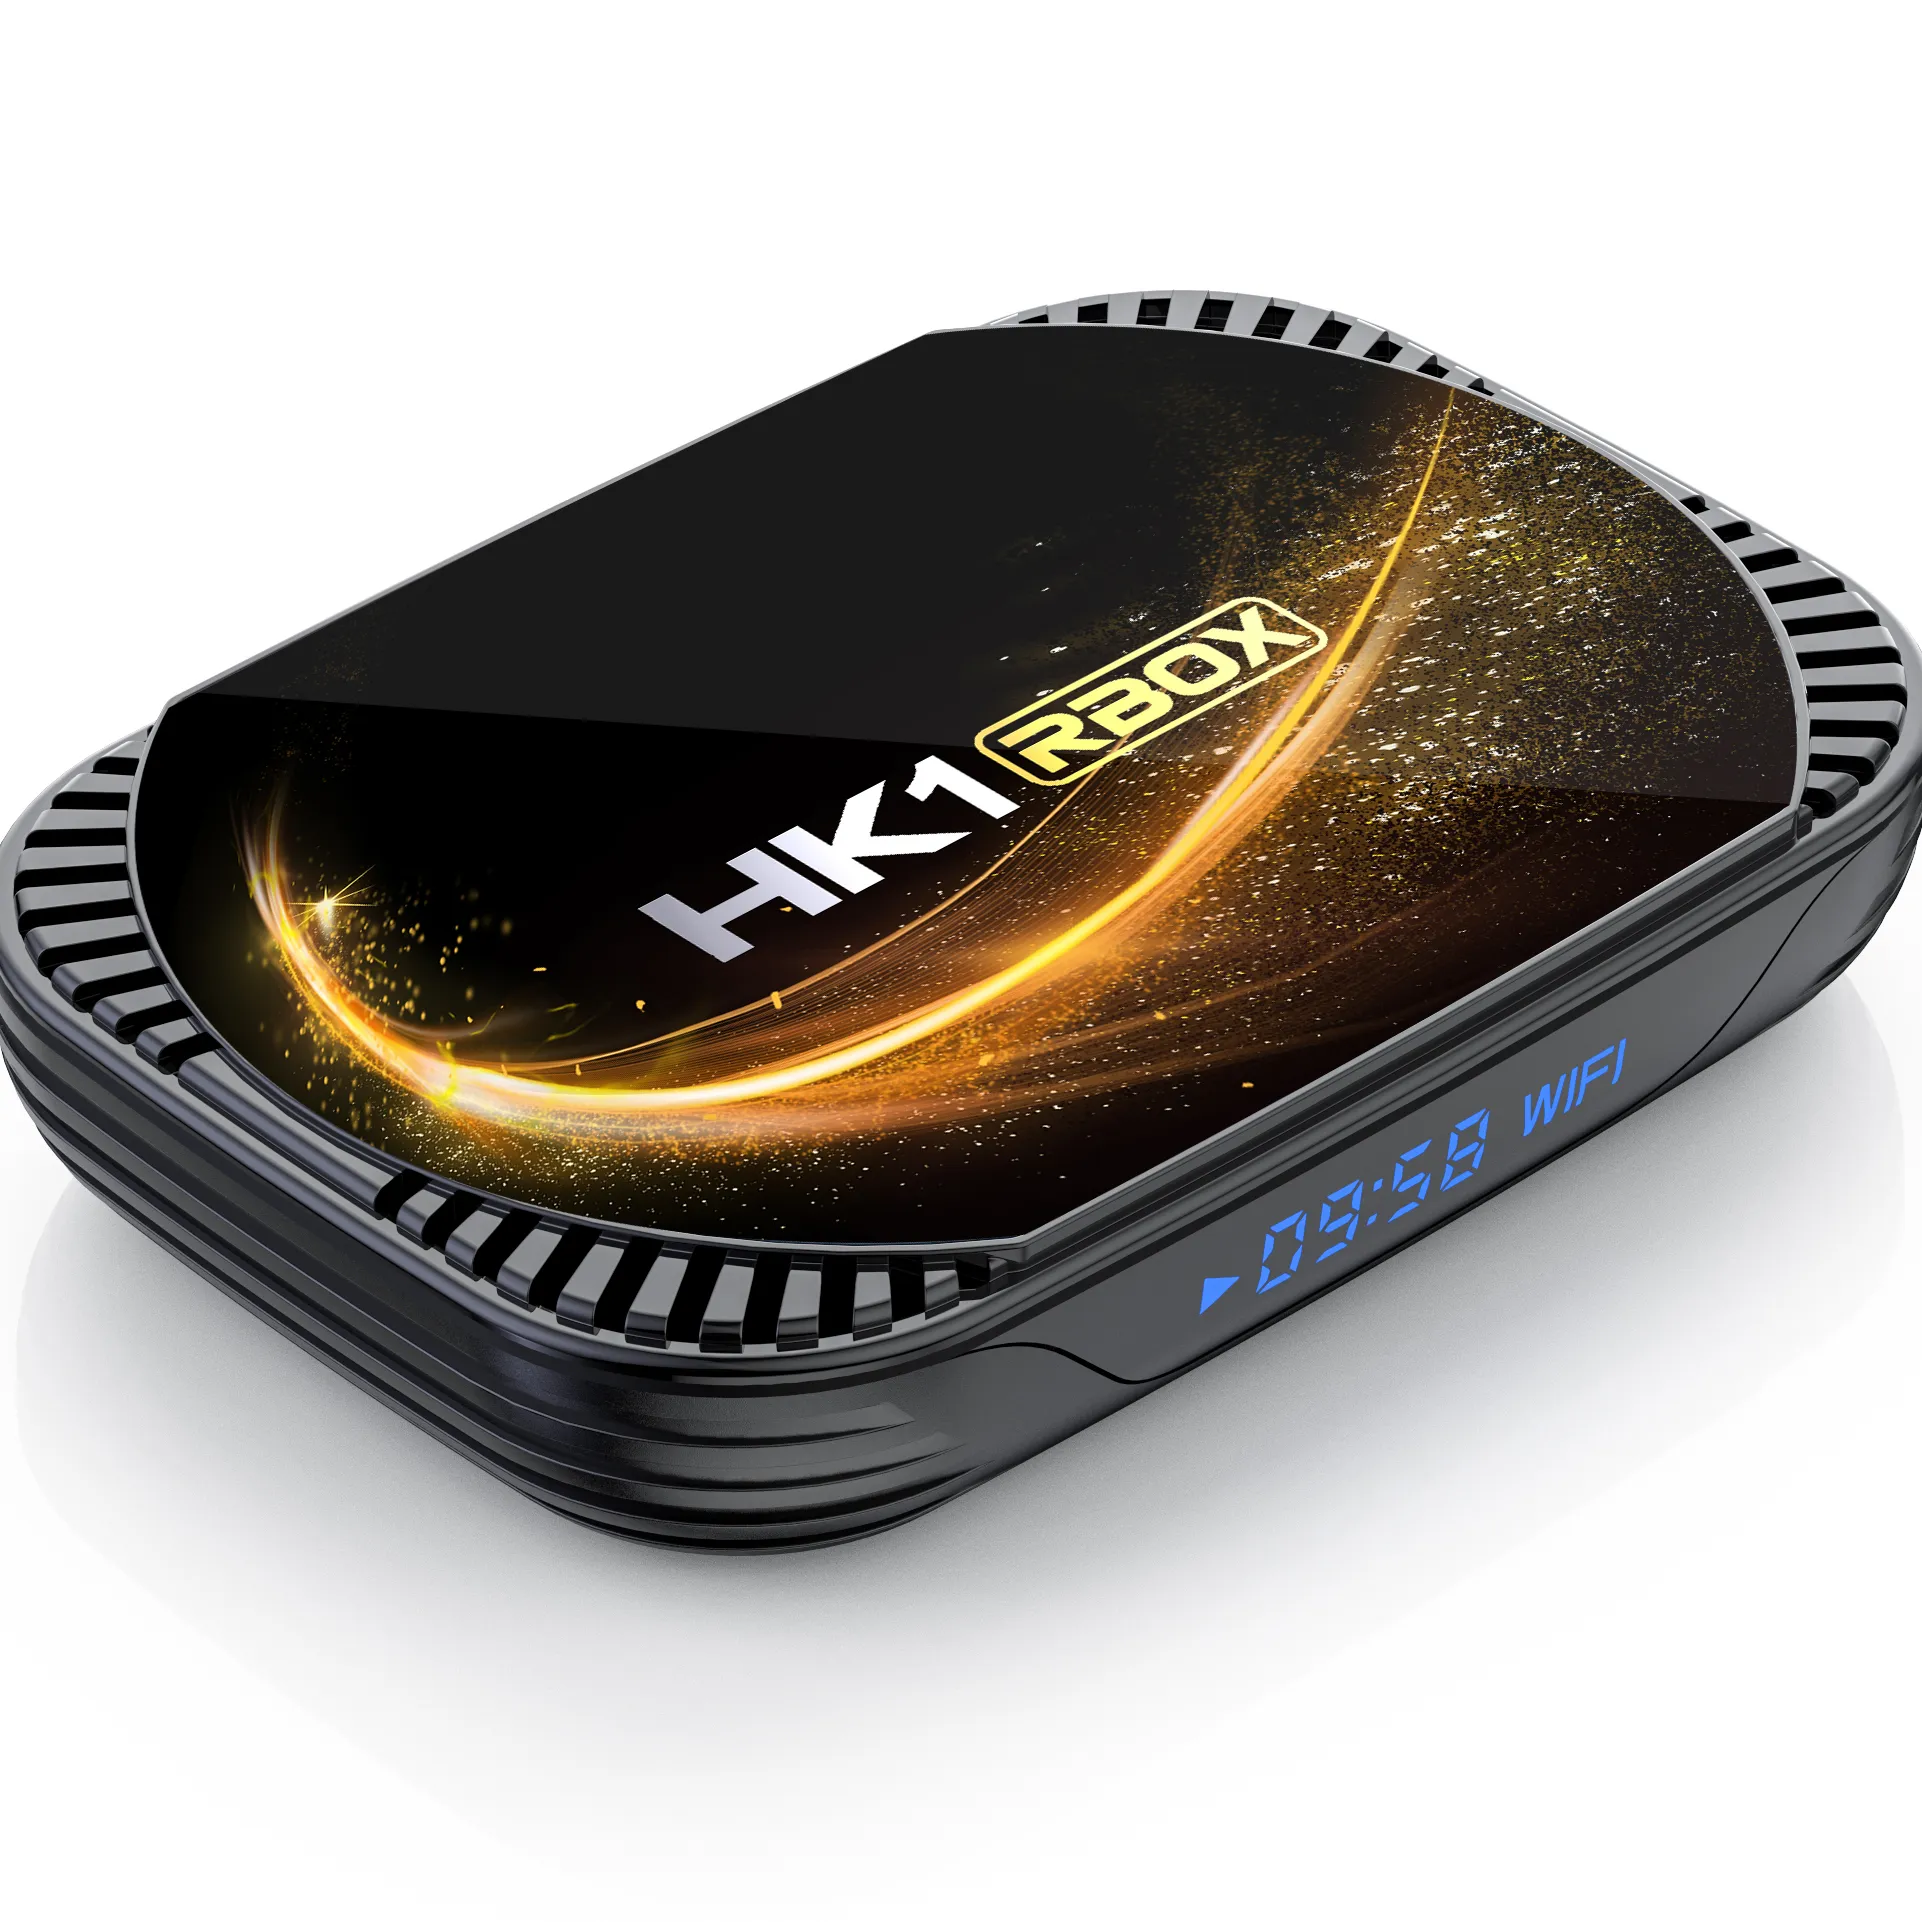 Decodificador de tv HK1 RBOX-X4S, receptor de televisión inteligente con android, tt, reproductor, RBOX-X4S, novedad, venta al por mayor, el mejor fabricante, 2022